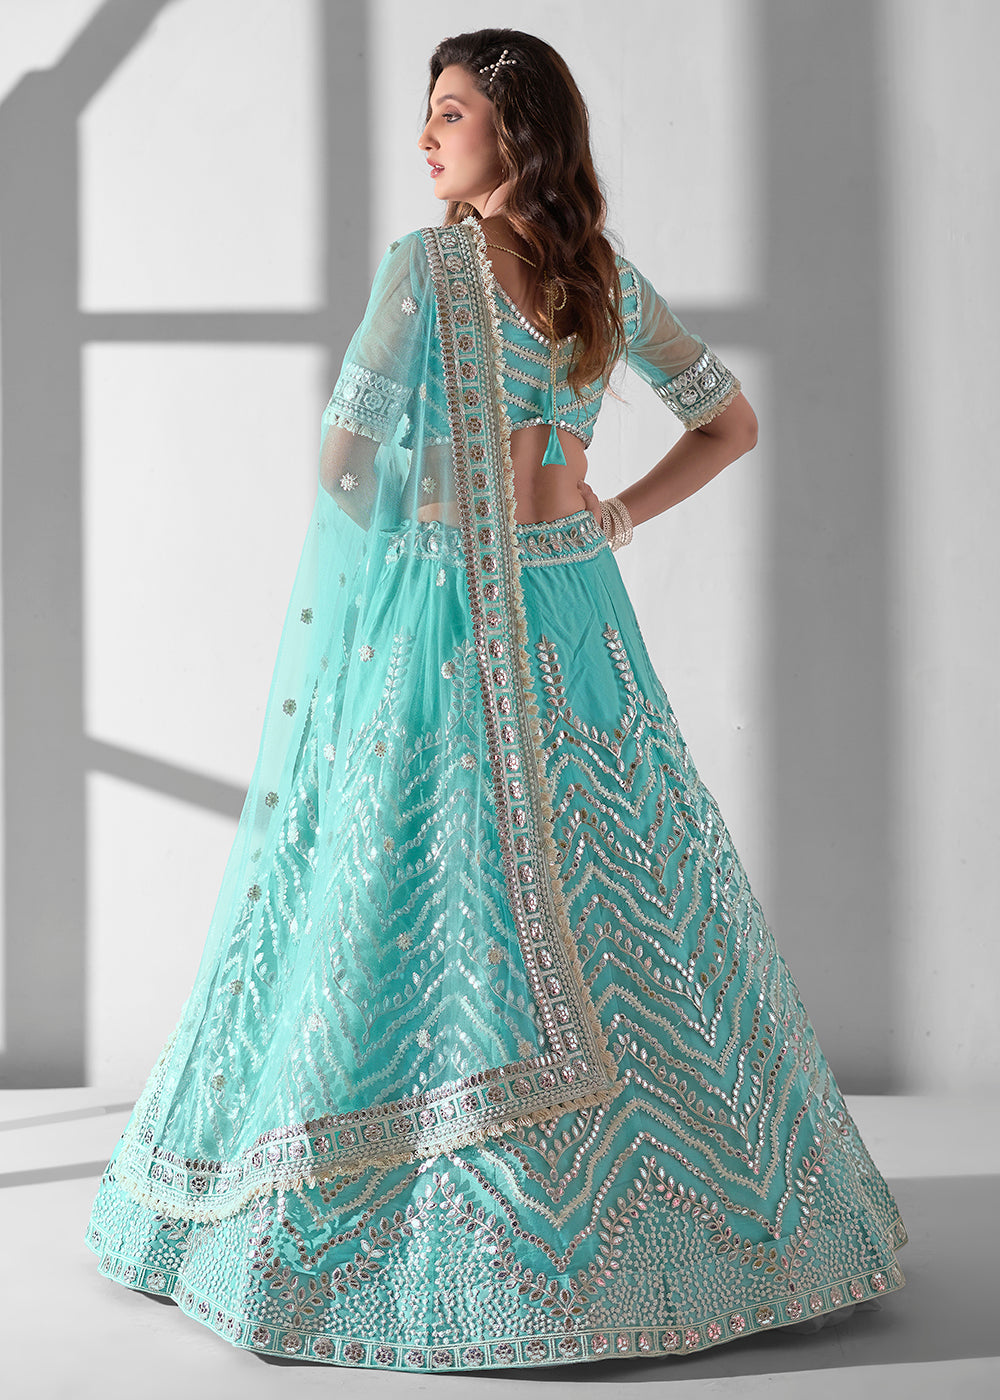 Buy Now Aqua Blue Multi Embroidered Wedding Festive Lehenga Choli Online in USA, UK, Canada & Worldwide at Empress Clothing. 